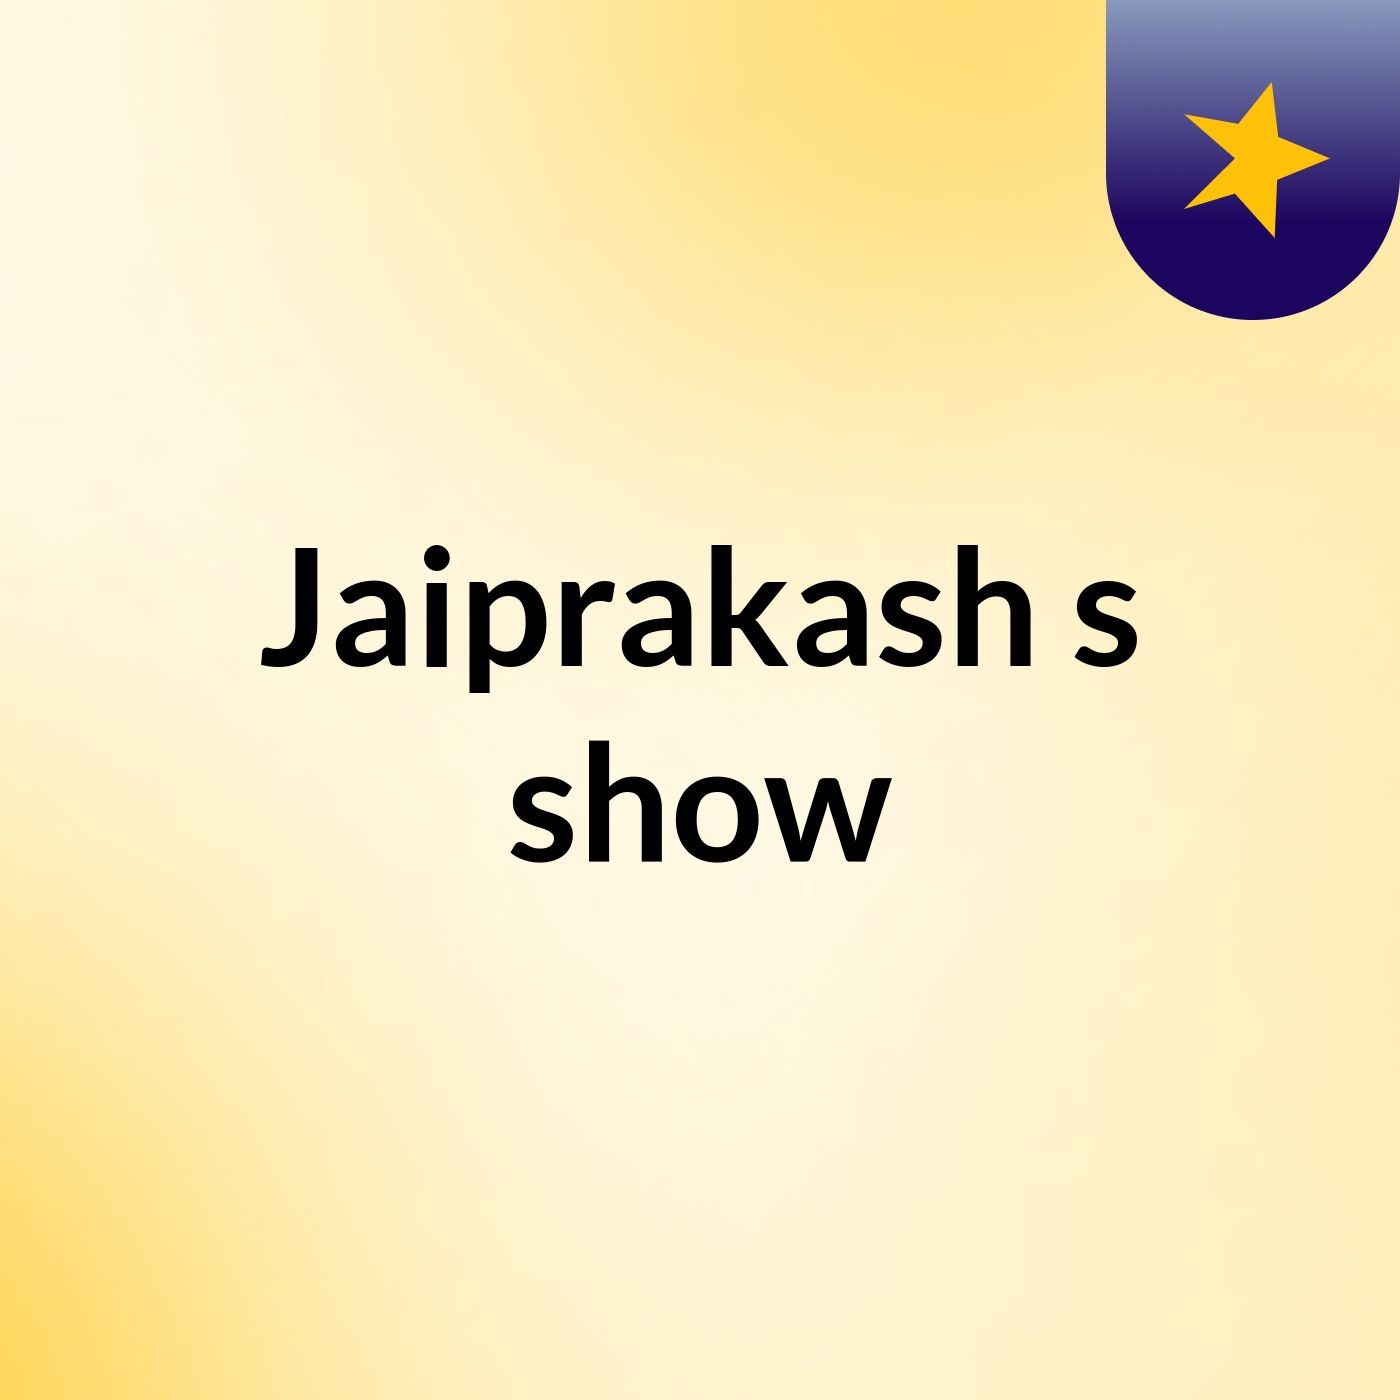 Jaiprakash's show